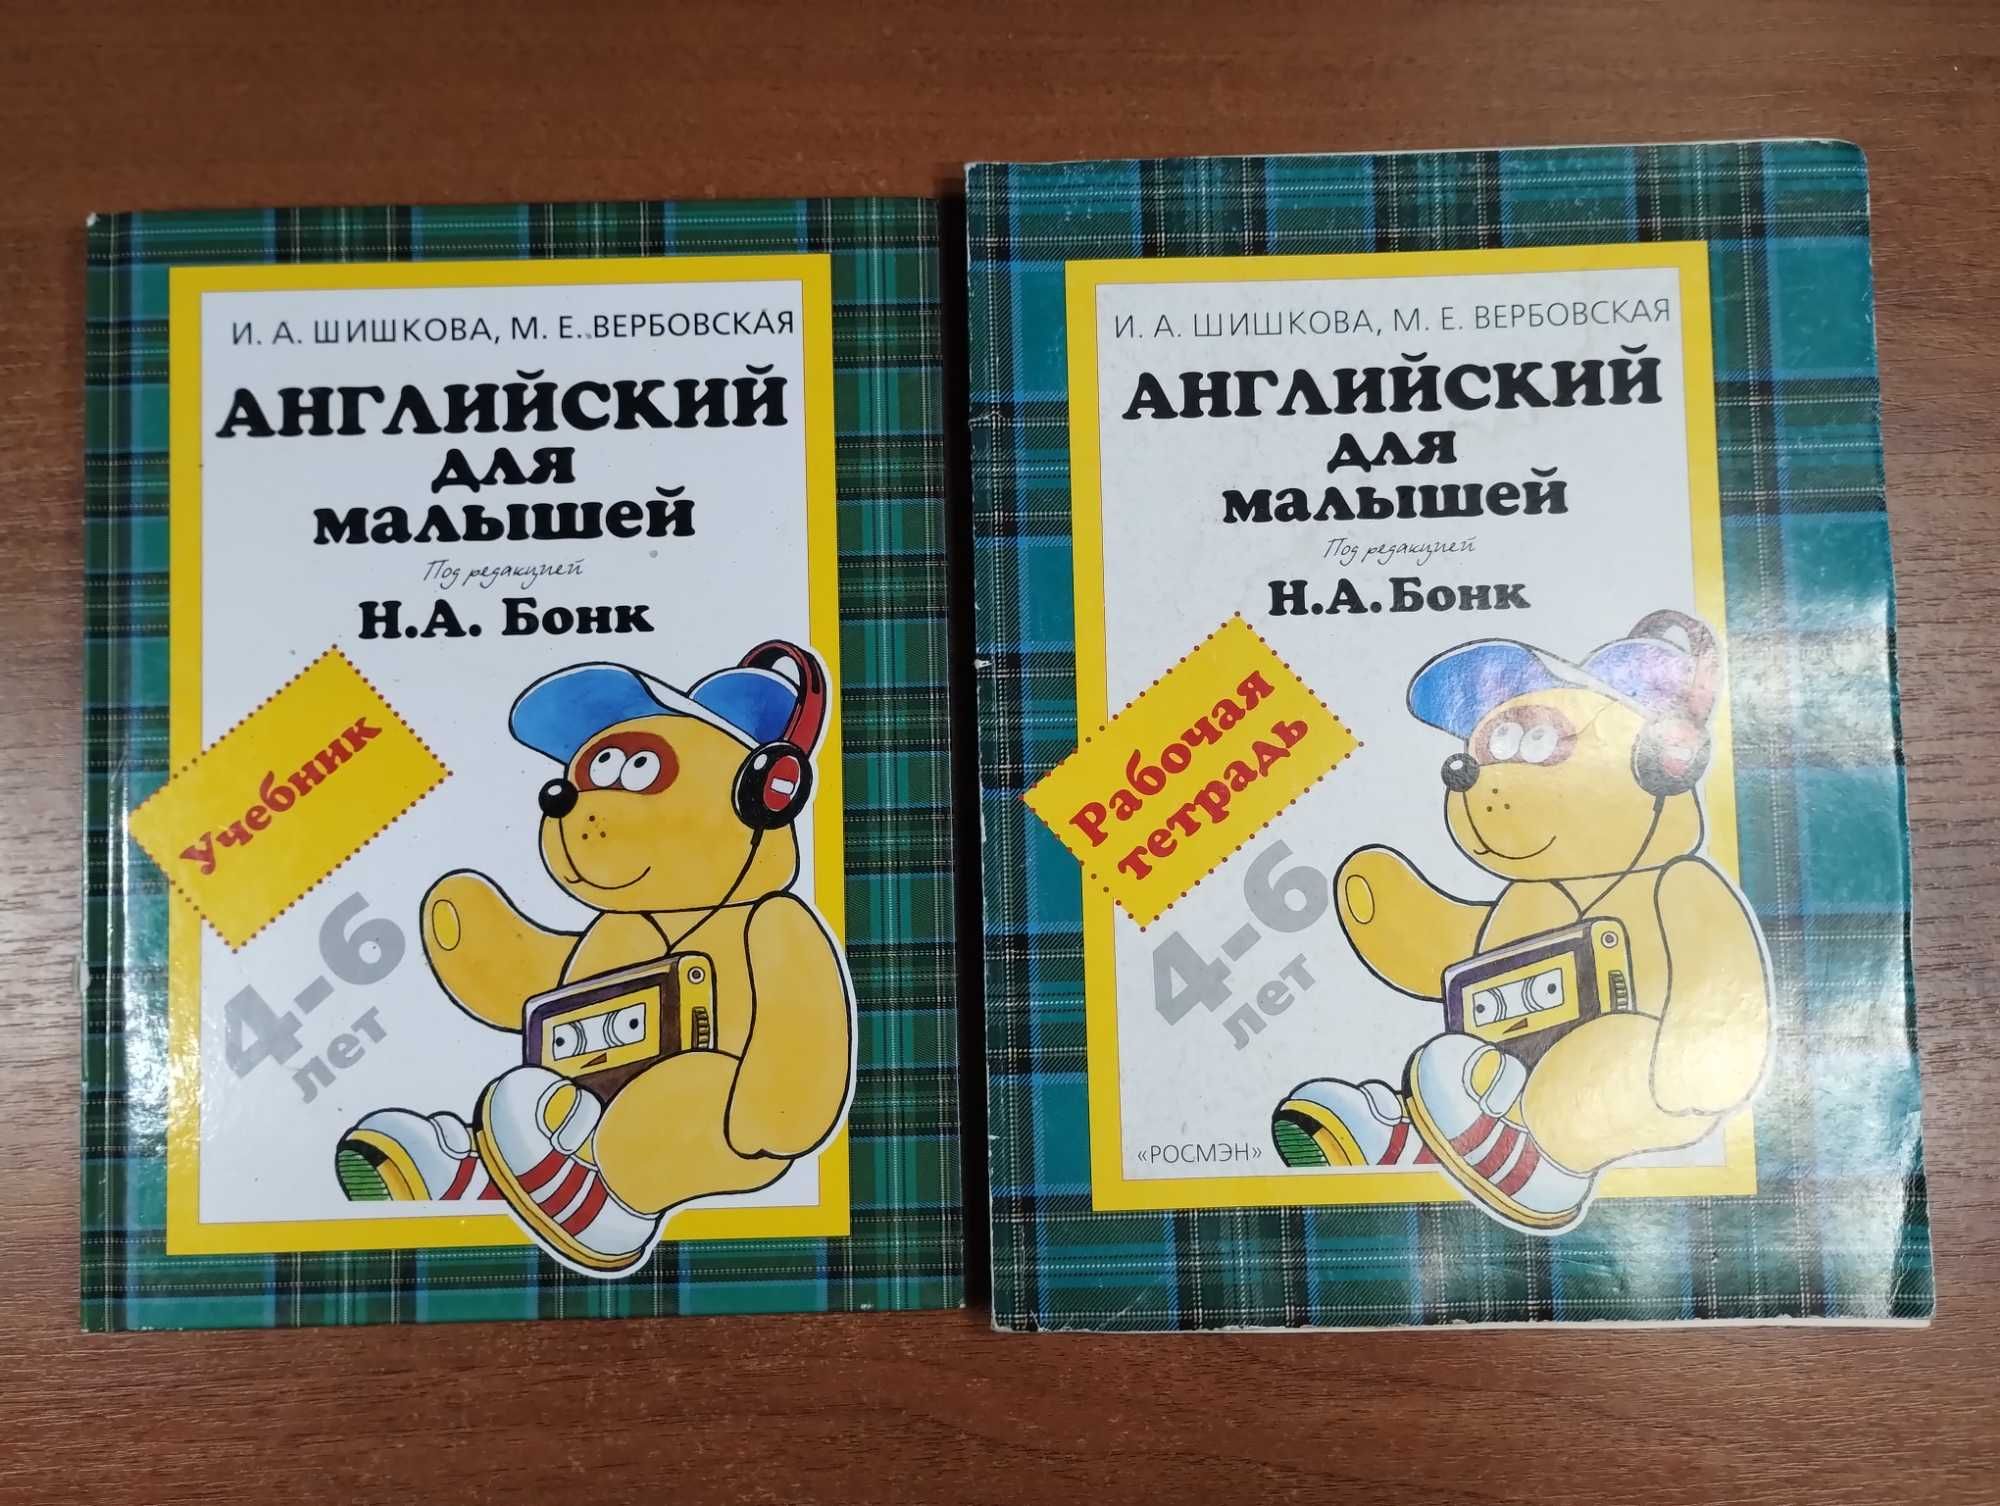 Бонк, Шишкова "Английский для малышей" Учебник + Тетрадь (4-6 лет)